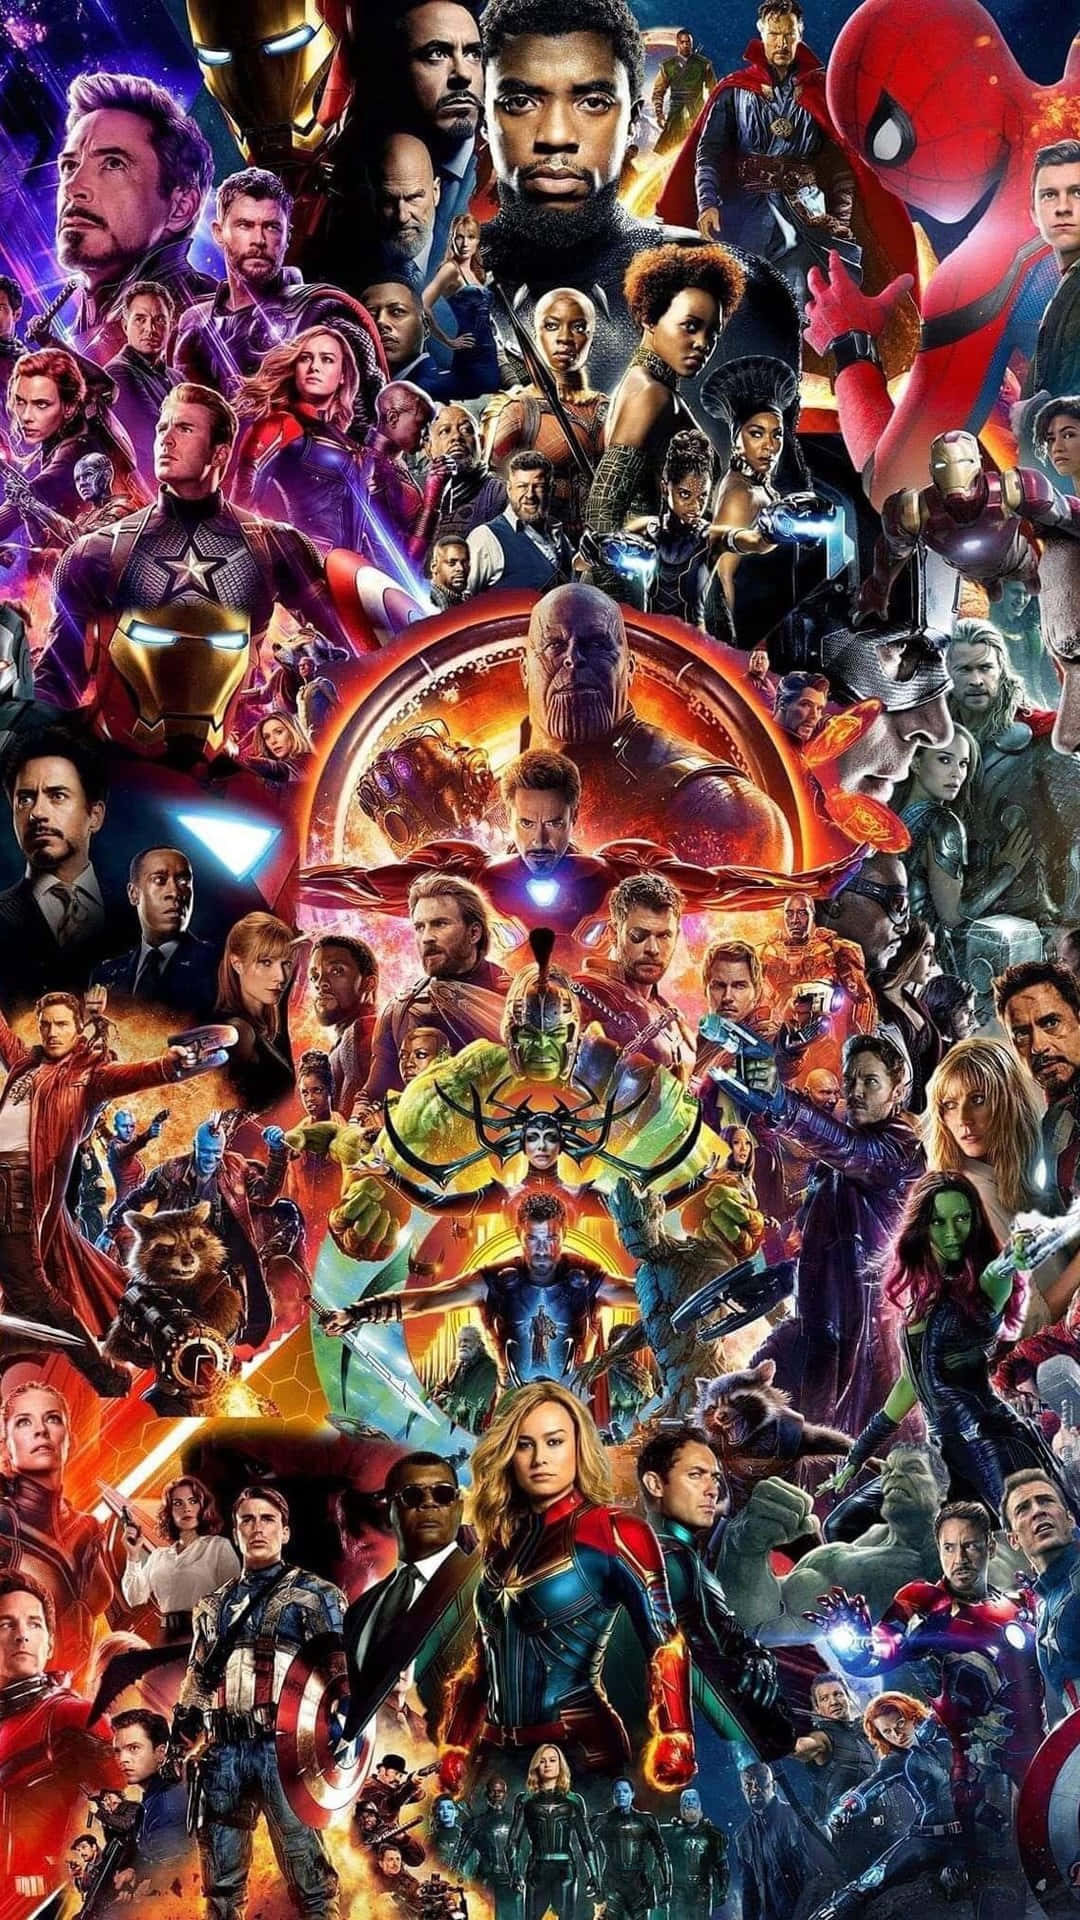 Wallpaperupplev Din Inre Avengers-hjälte Med Avengers Endgame Som Iphone-bakgrundsbild. Wallpaper